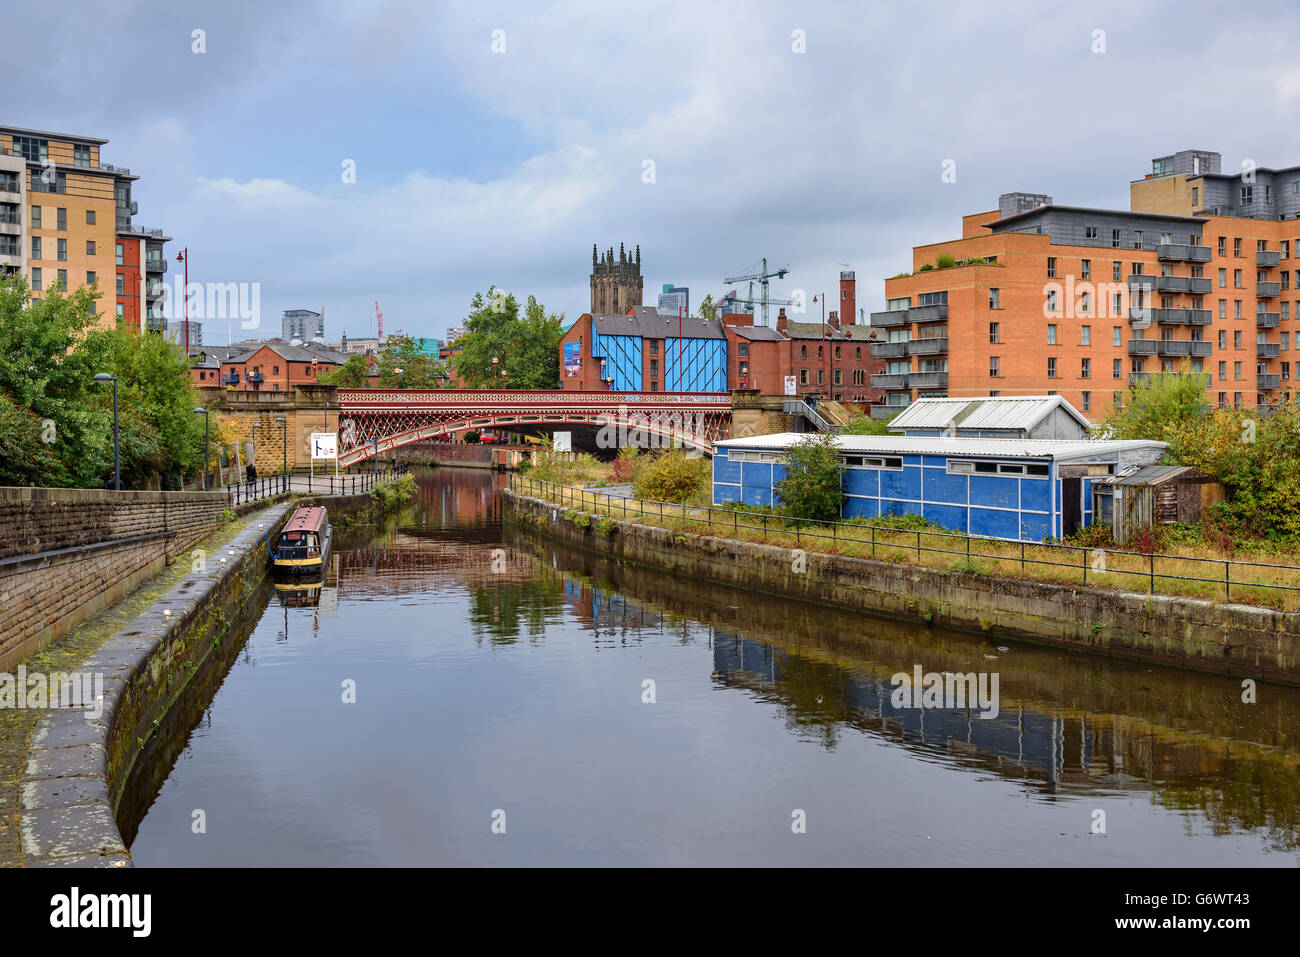 Leeds Dock est un développement mixte avec détail, bureaux de passage et de présence par la rivière Aire à Leeds, West Yorkshire, Angleterre Banque D'Images